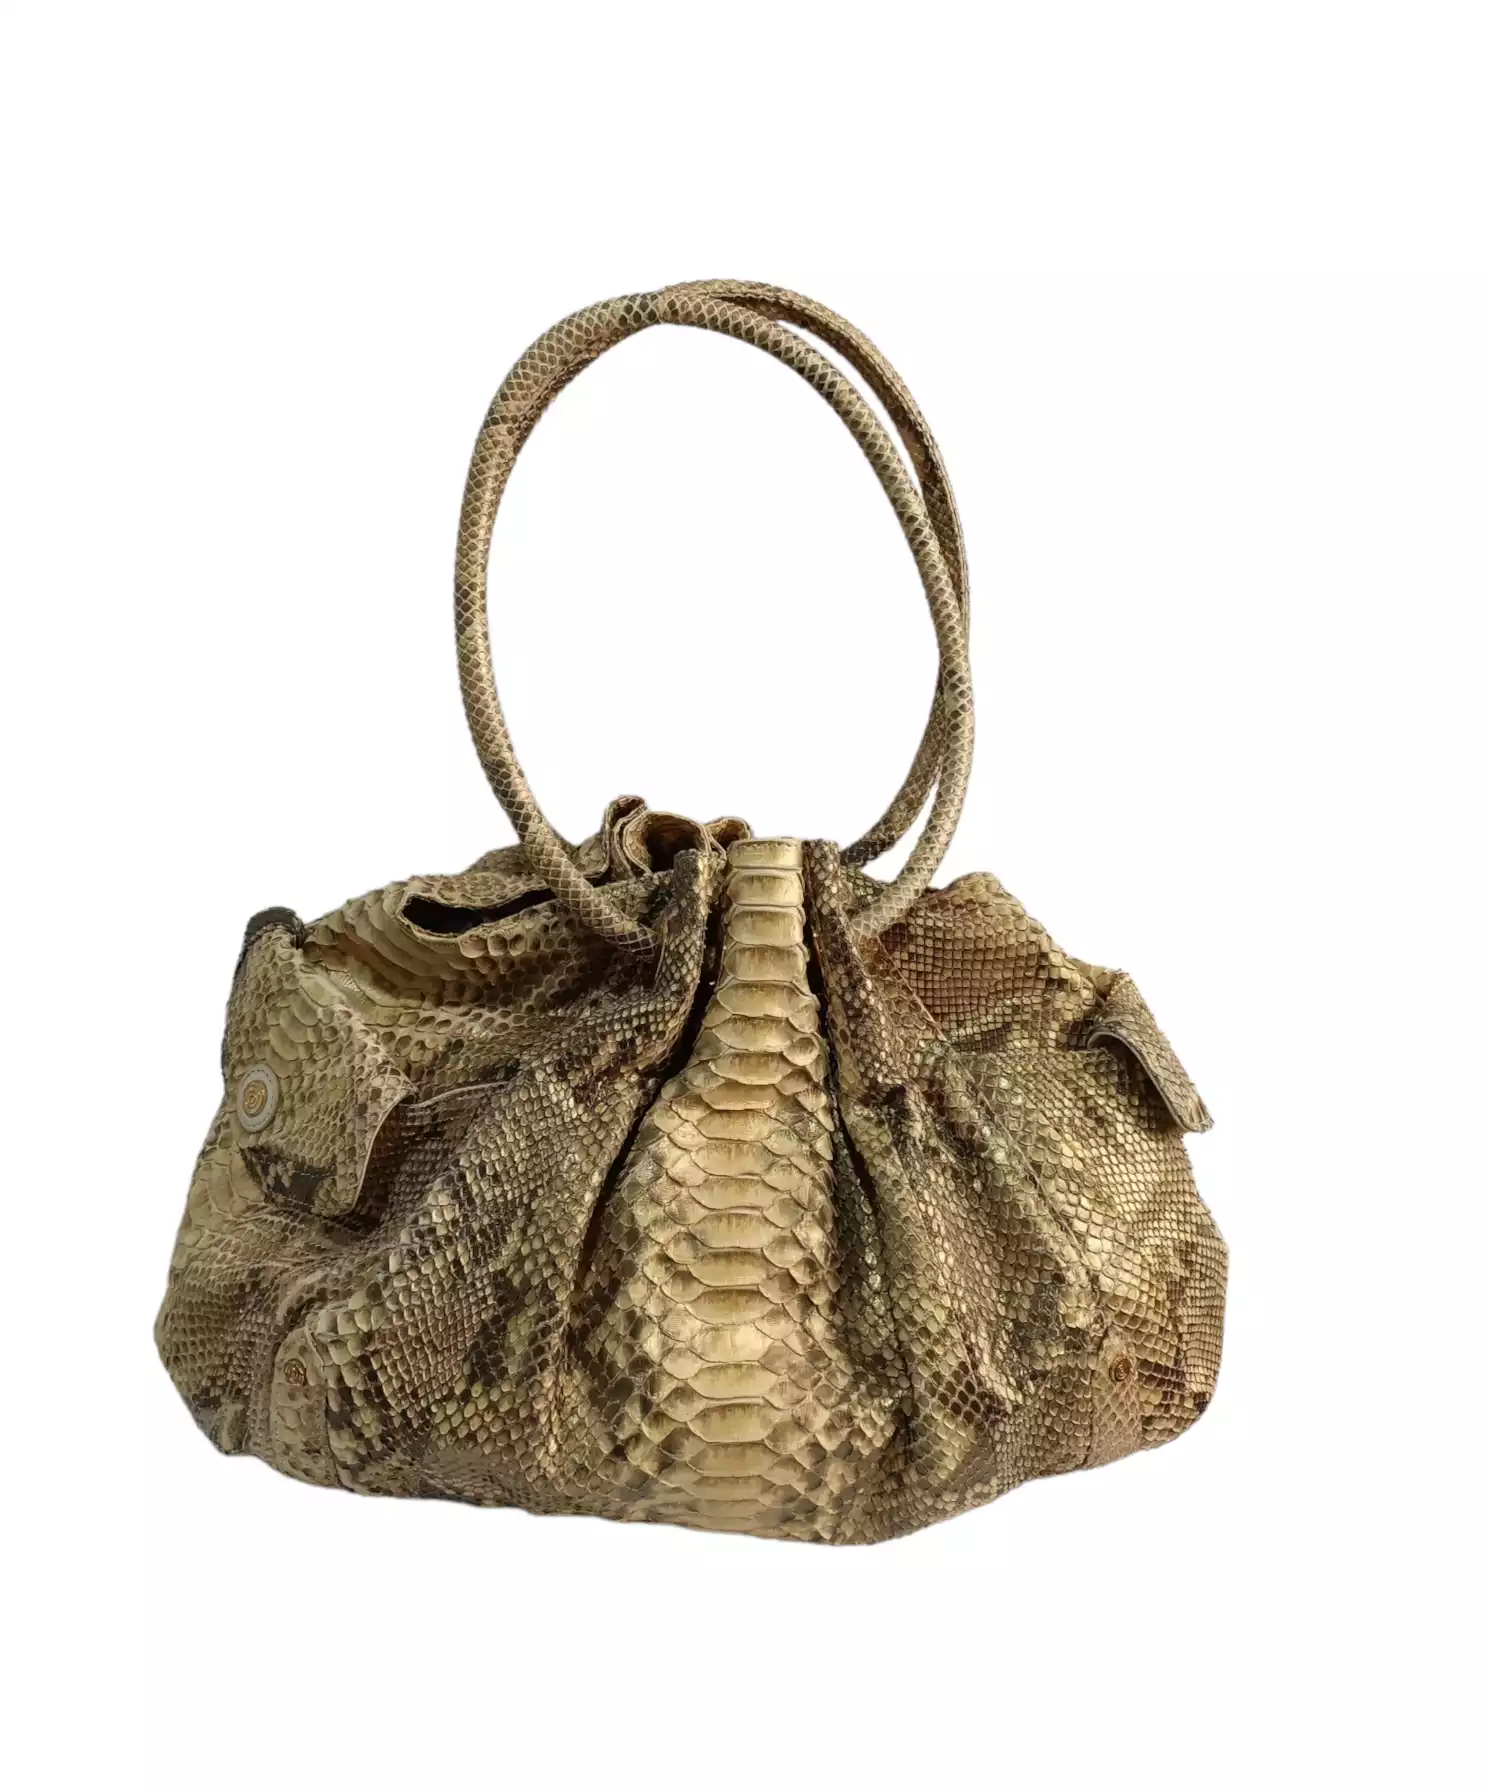 Handbag by Chiocciola